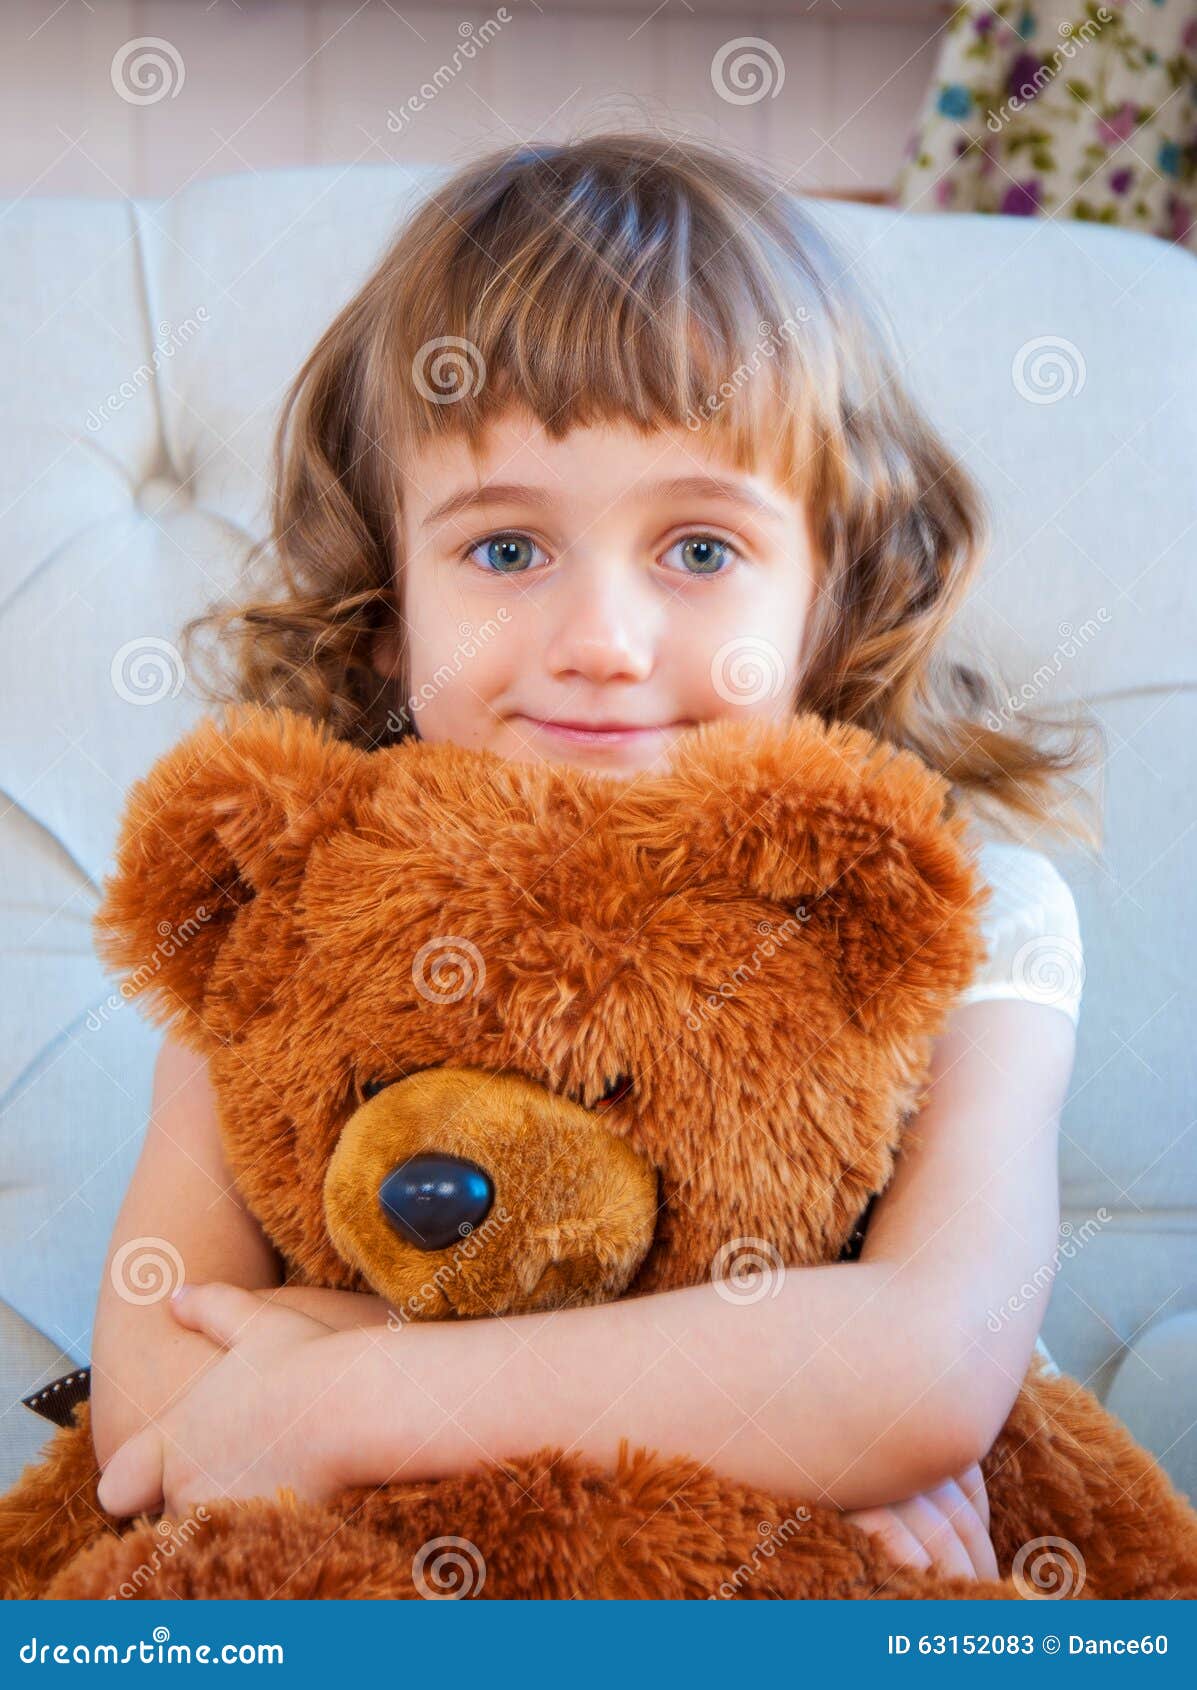 Little Girl with Teddy Bear Stock Image - Image of sweet, girl: 63152083